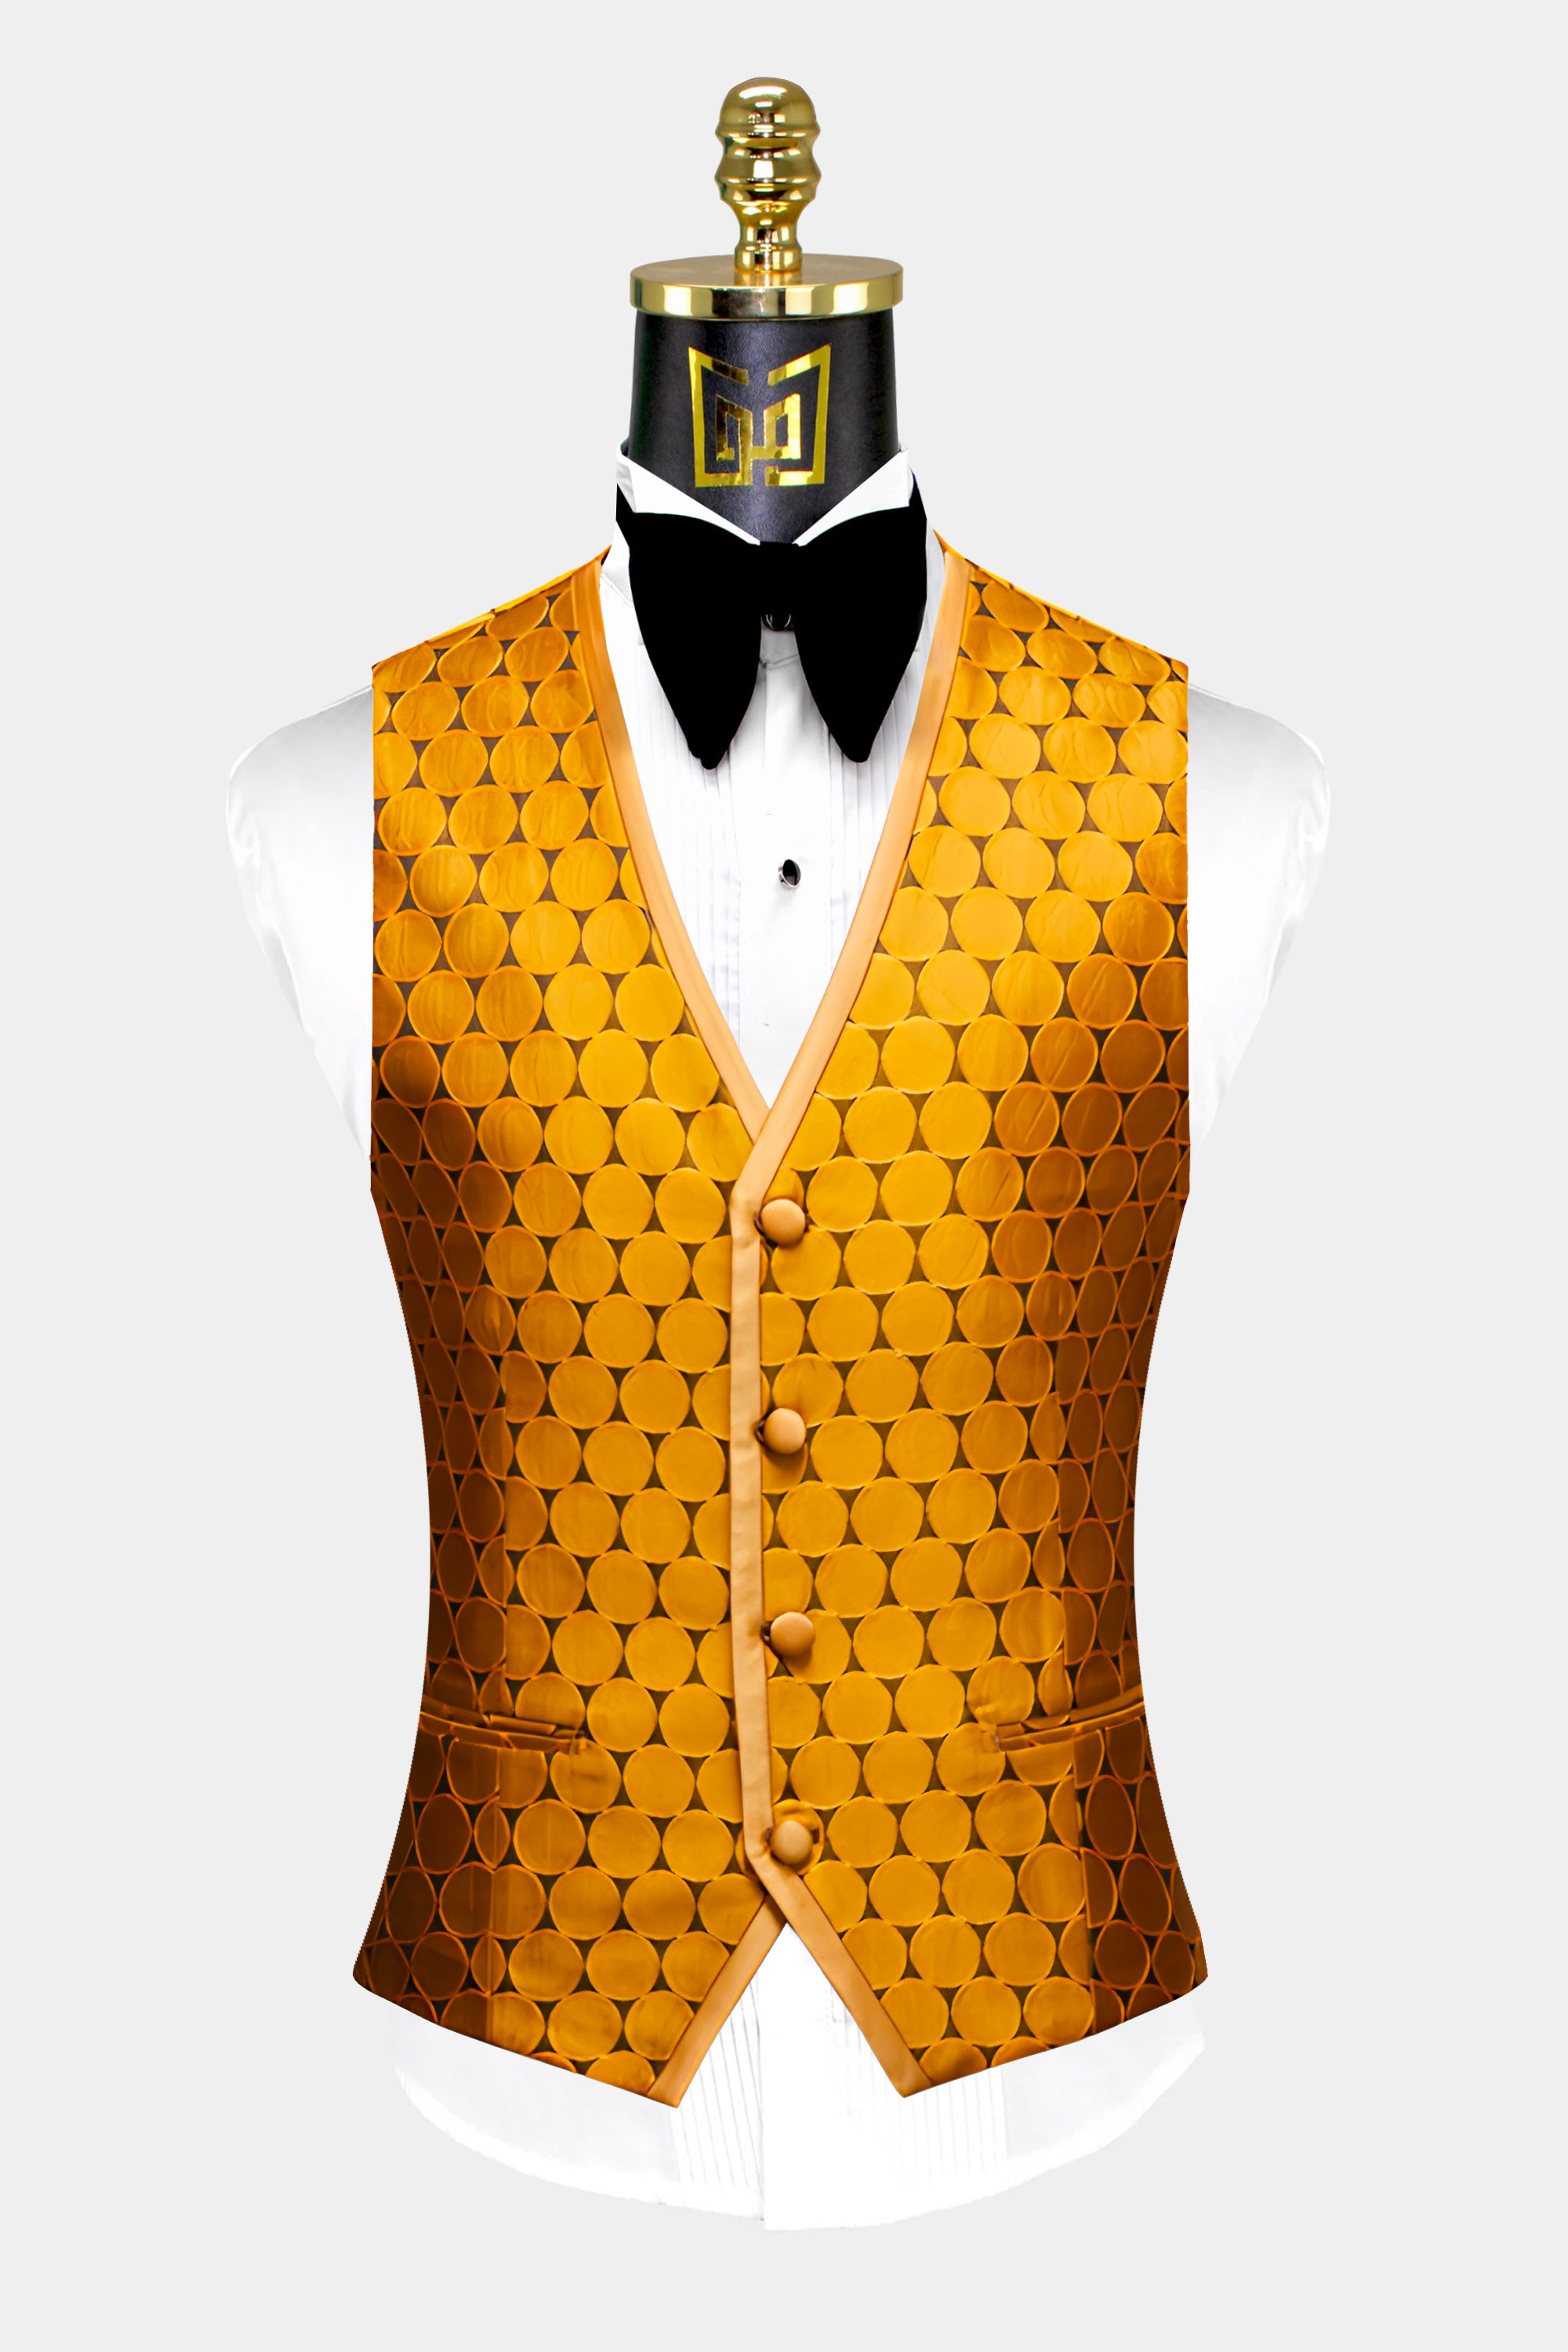 Gold-Poka-Dot-Tuxedo-Vest-from-Gentlemansguru.com